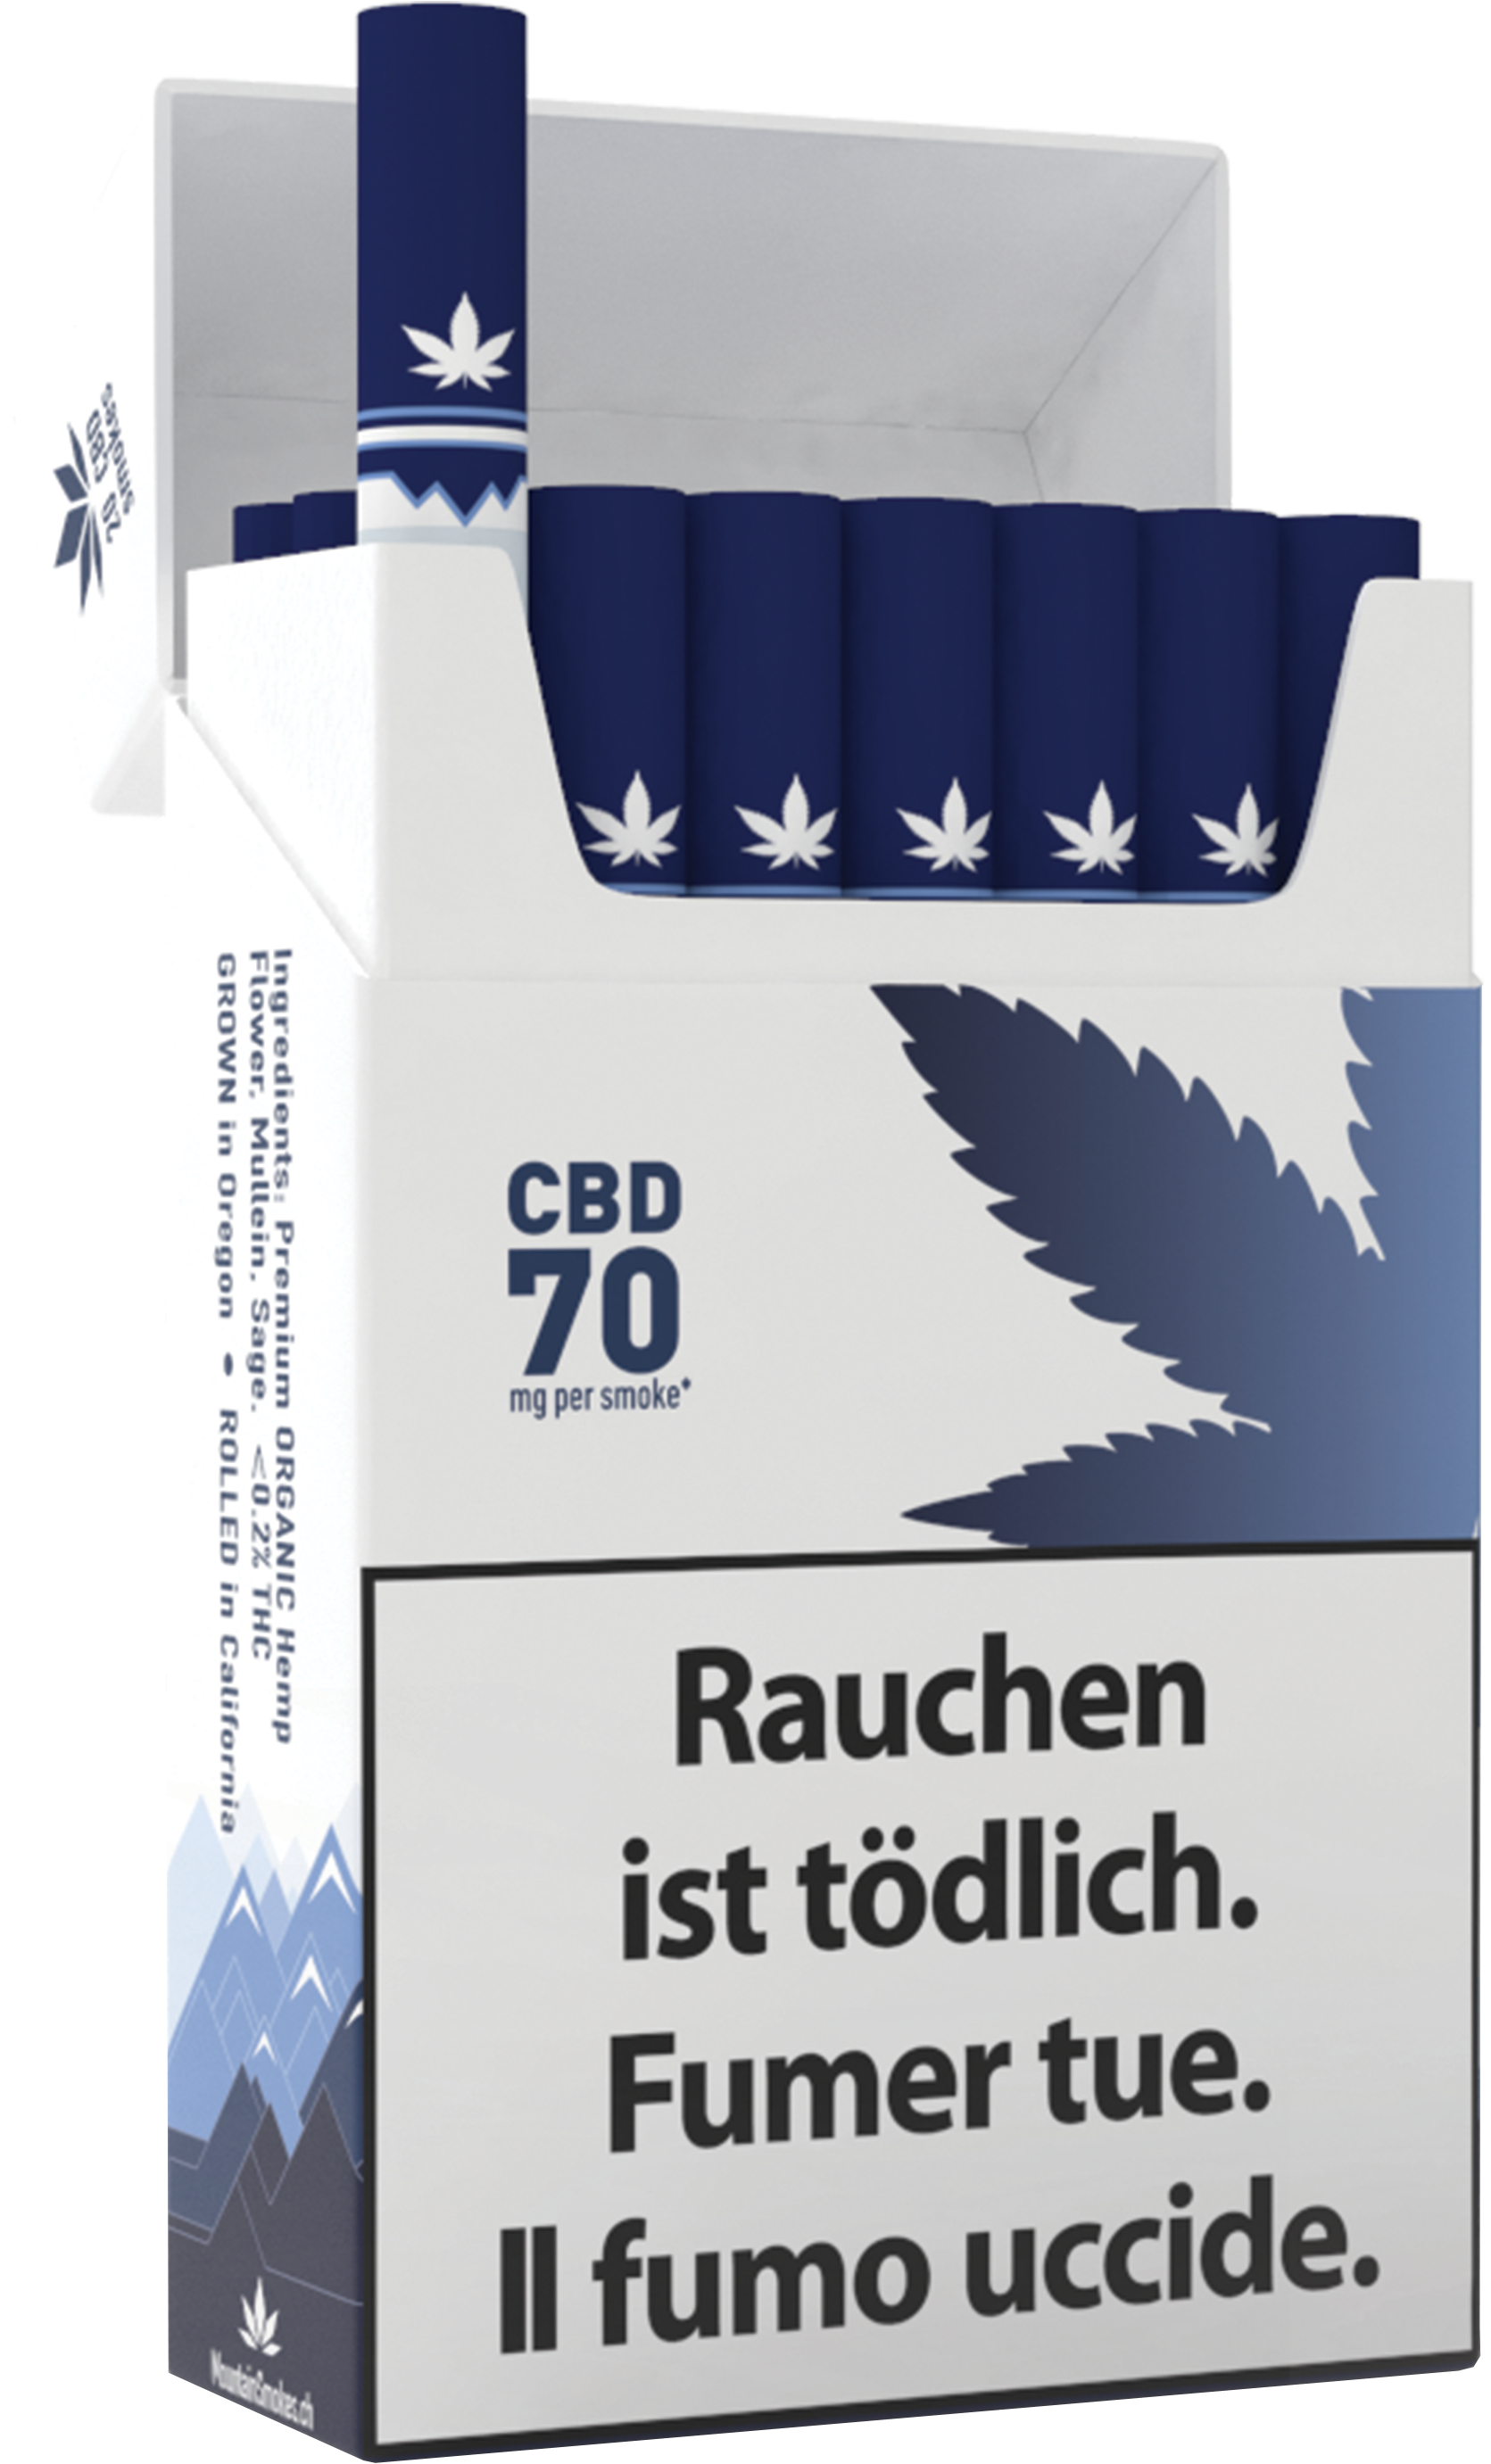 Image of Mountain Smokes CBD Zigaretten 70mg (1 Stk) bei CBD-Balance.ch